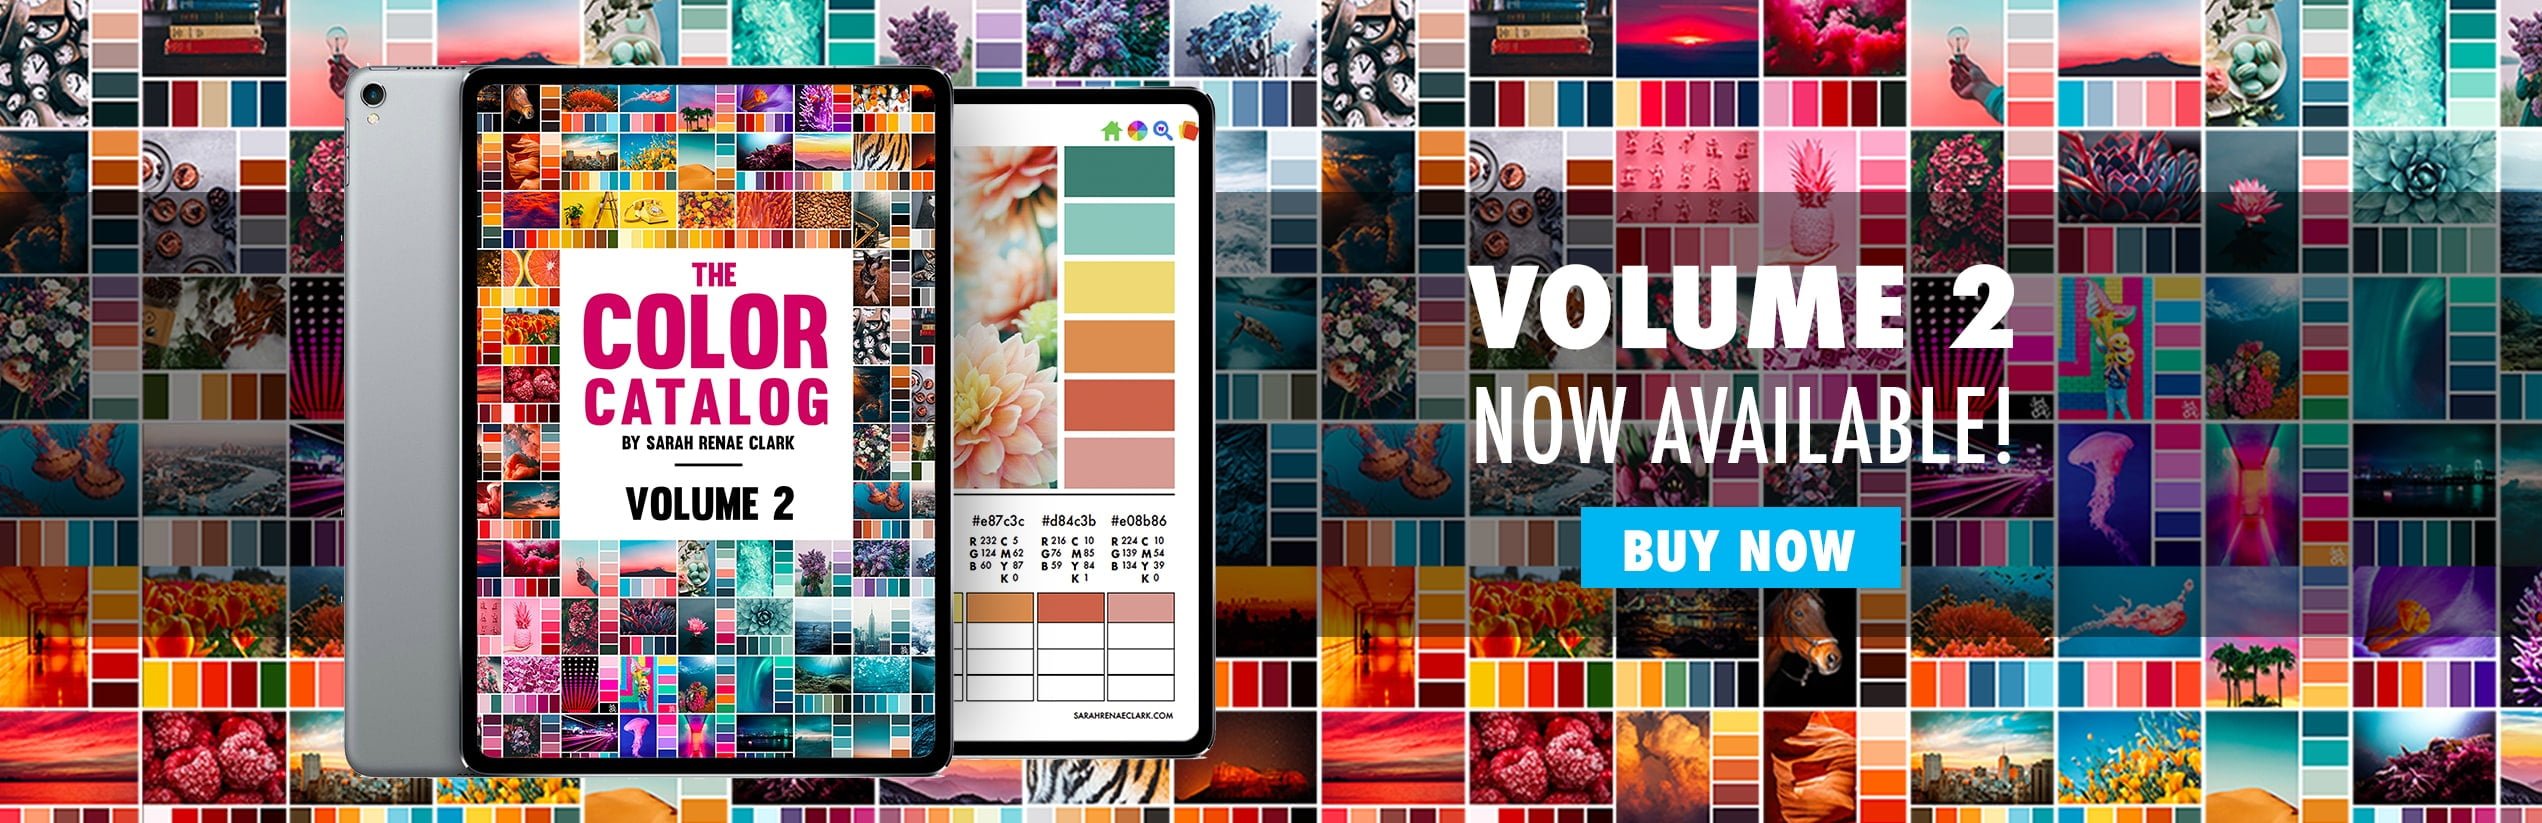 The Color Catalog Volume 2 - 250 color palettes